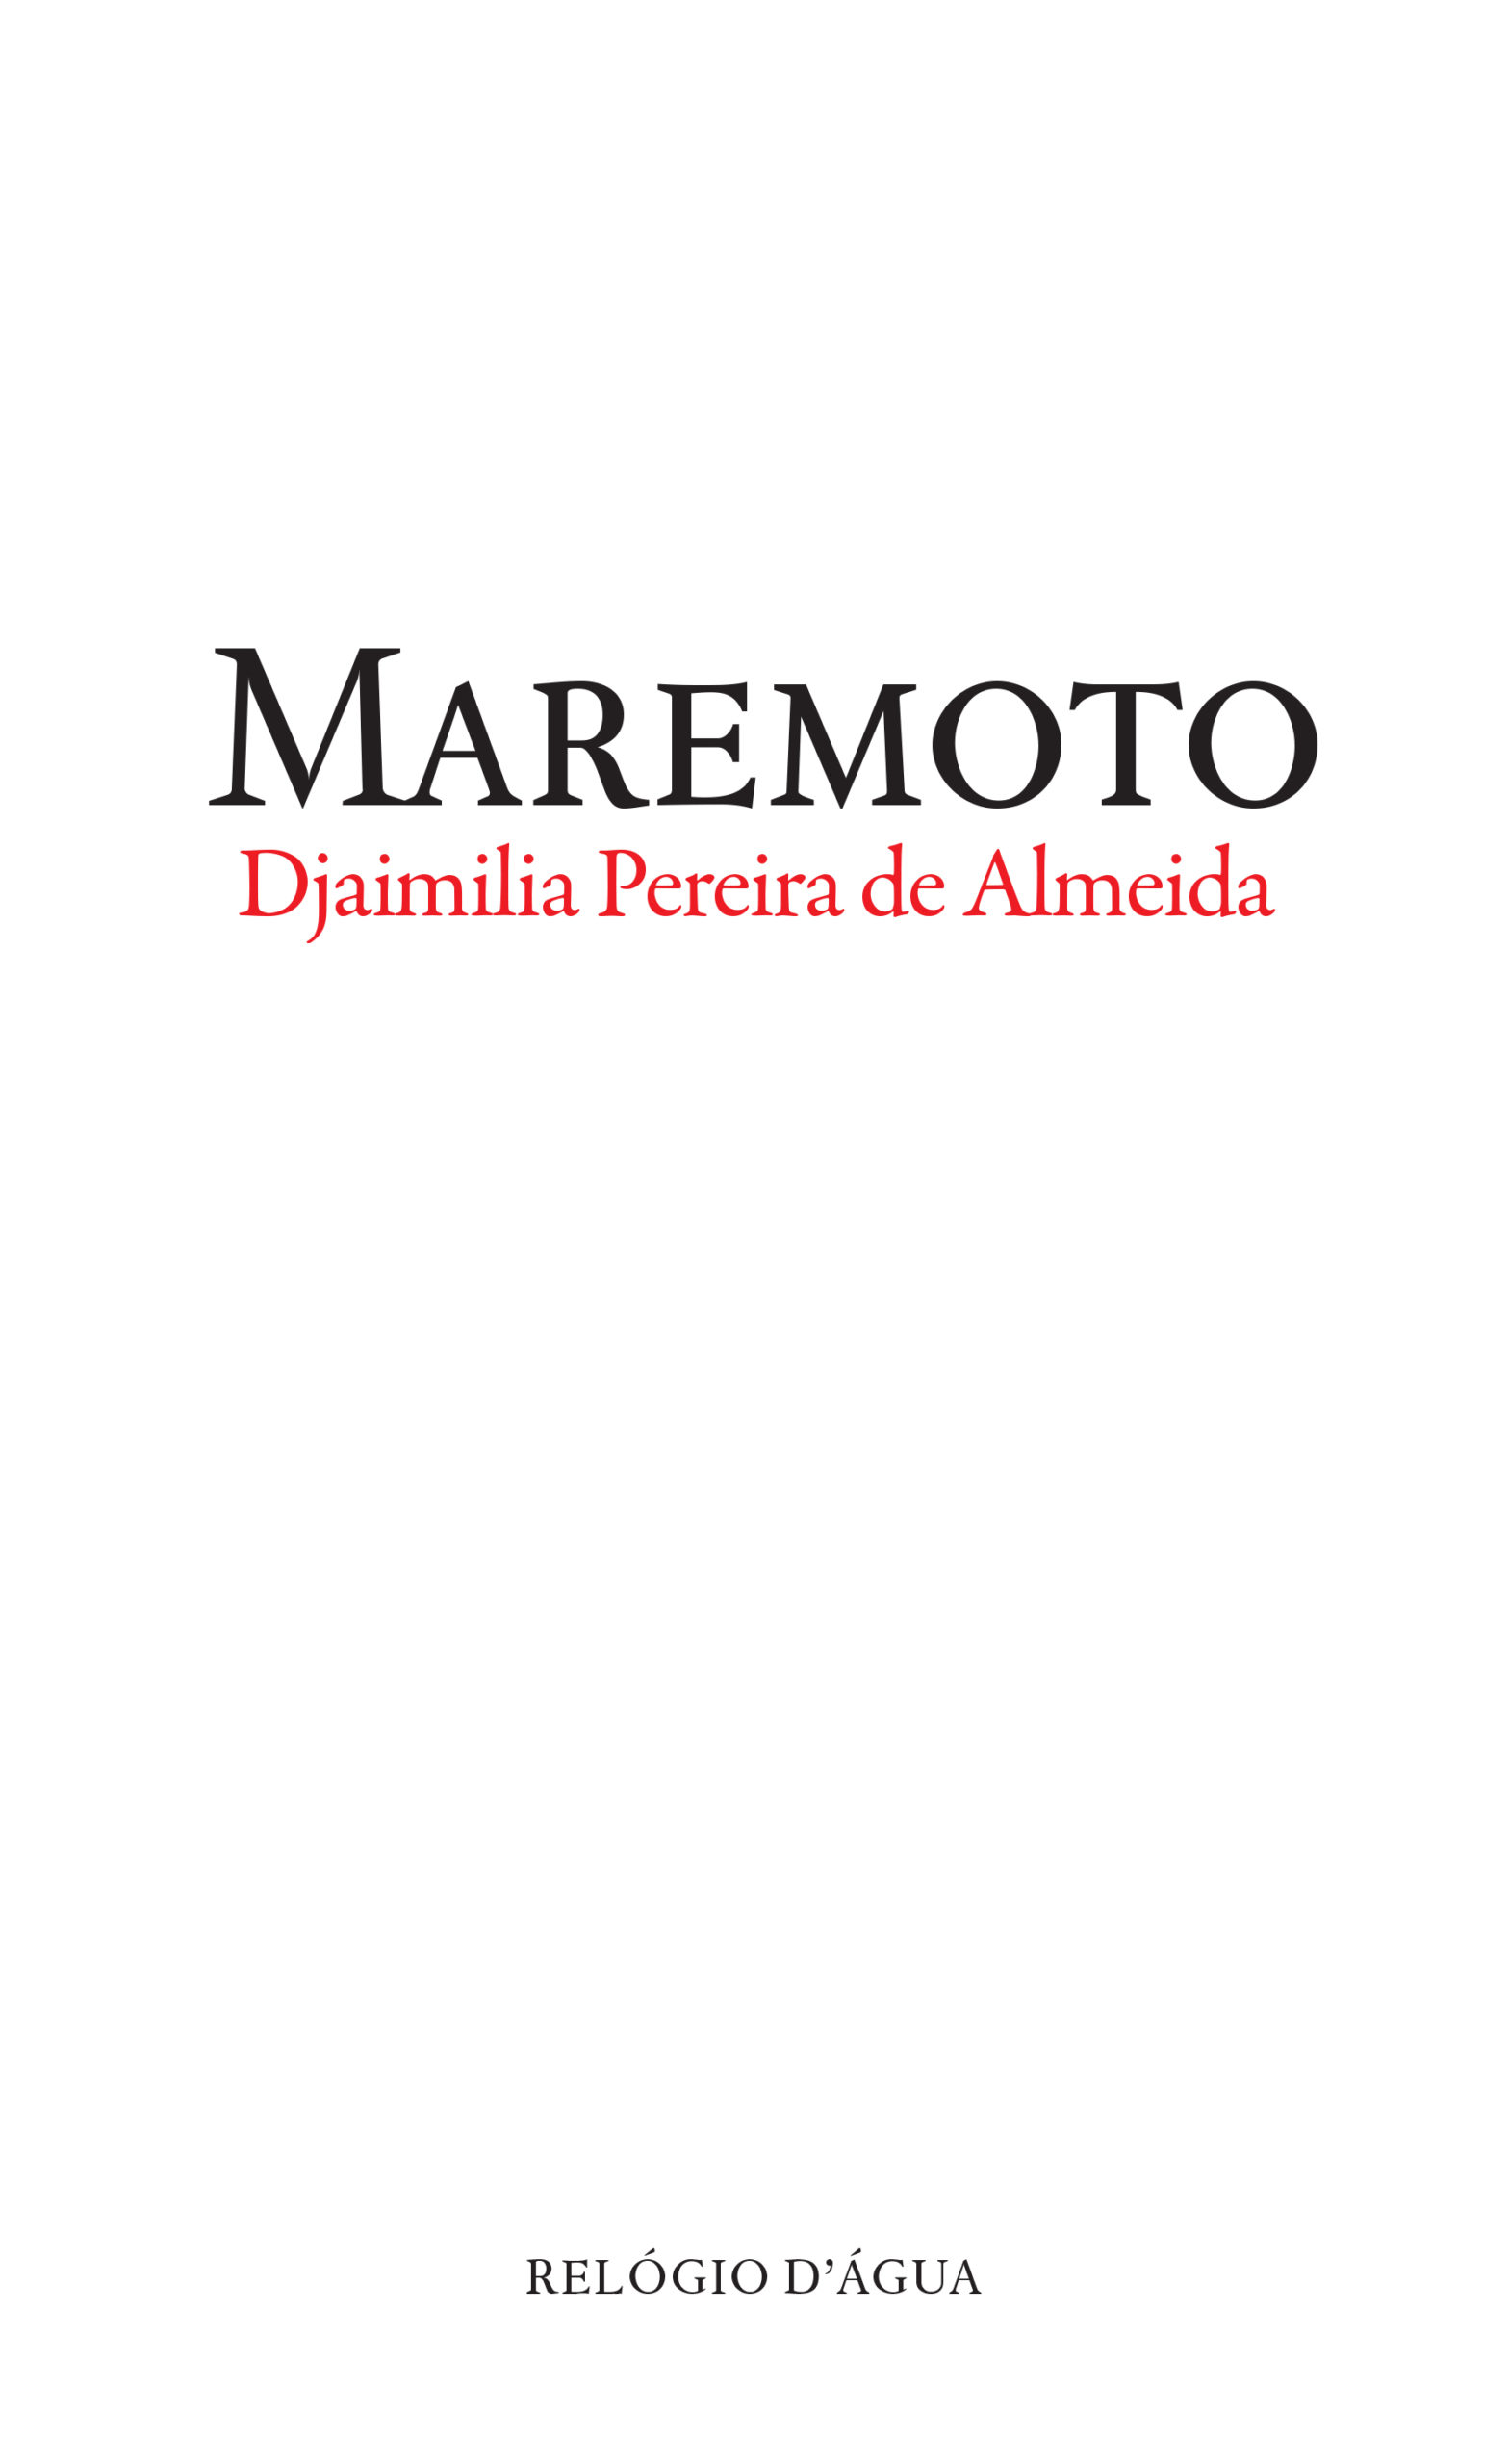 Maremoto, de Djaimilia Pereira de Almeida